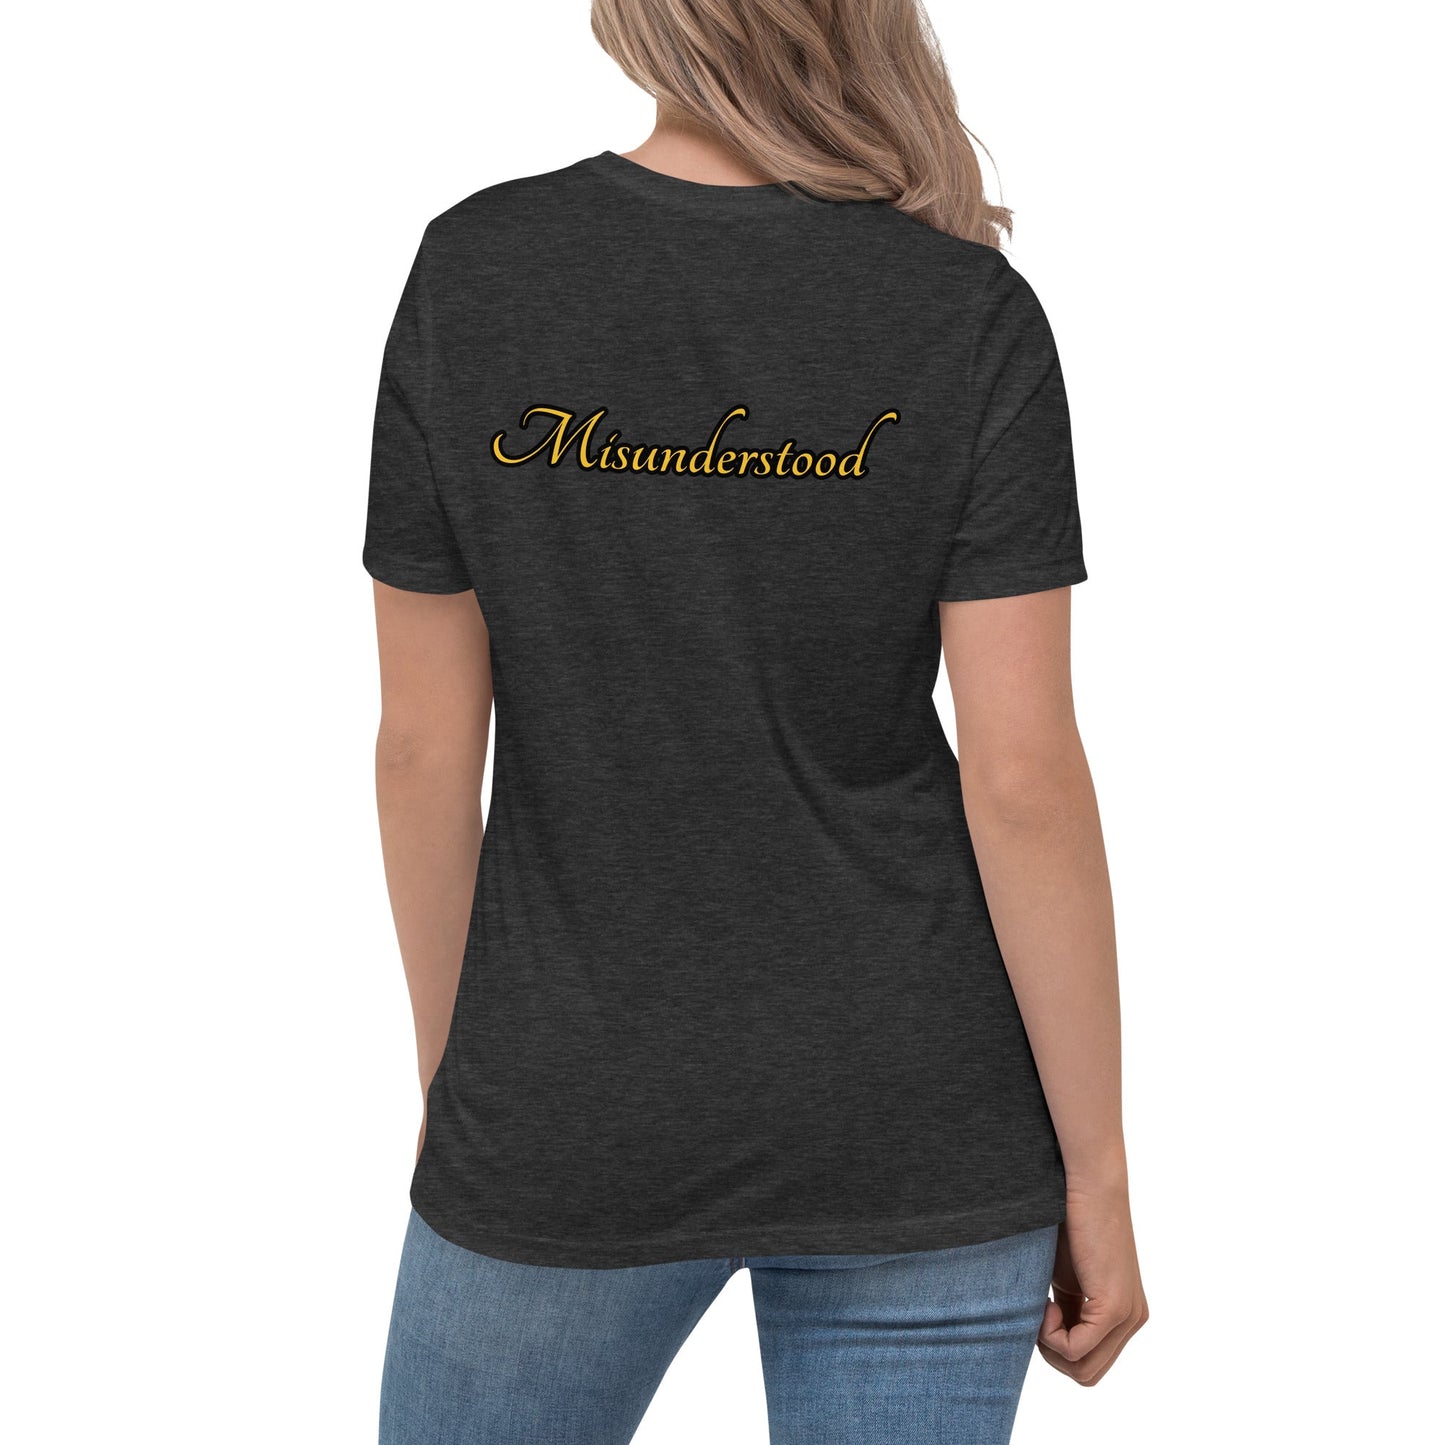 Misunderstood Women's Relaxed T-Shirt - Weirdly Sensational